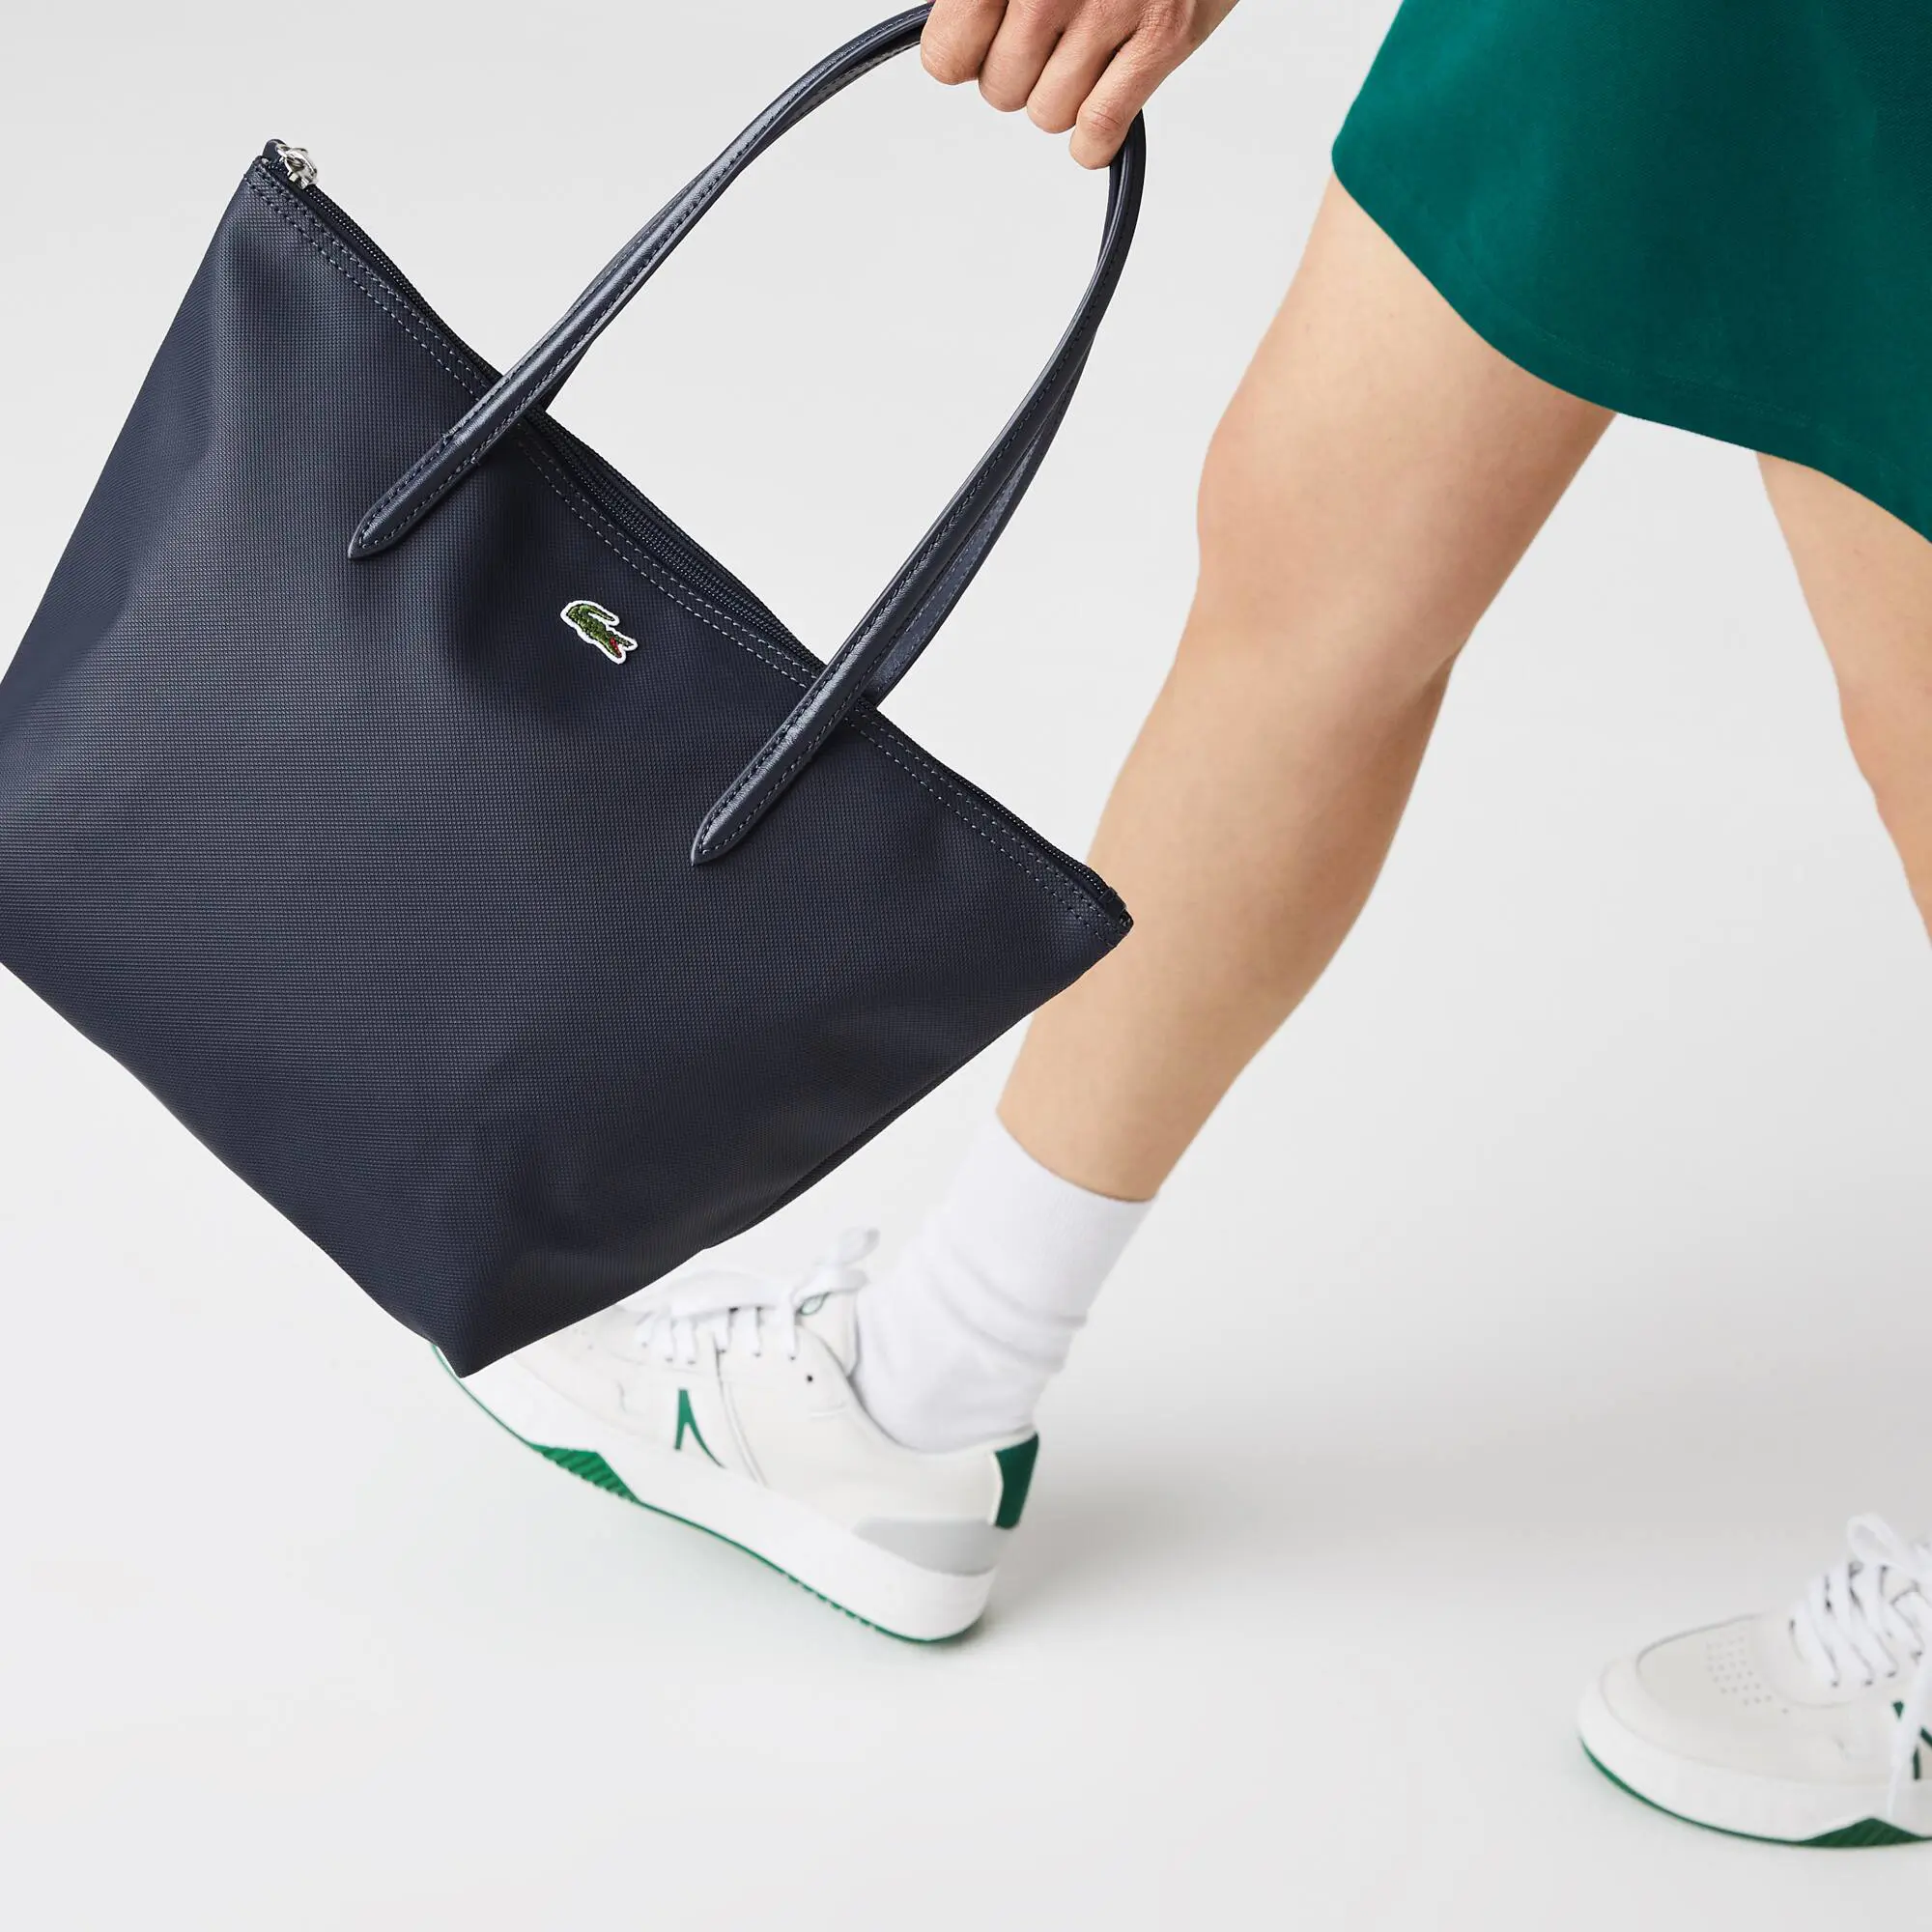 Lacoste Women's L.12.12 Concept Small Zip Tote Bag. 1